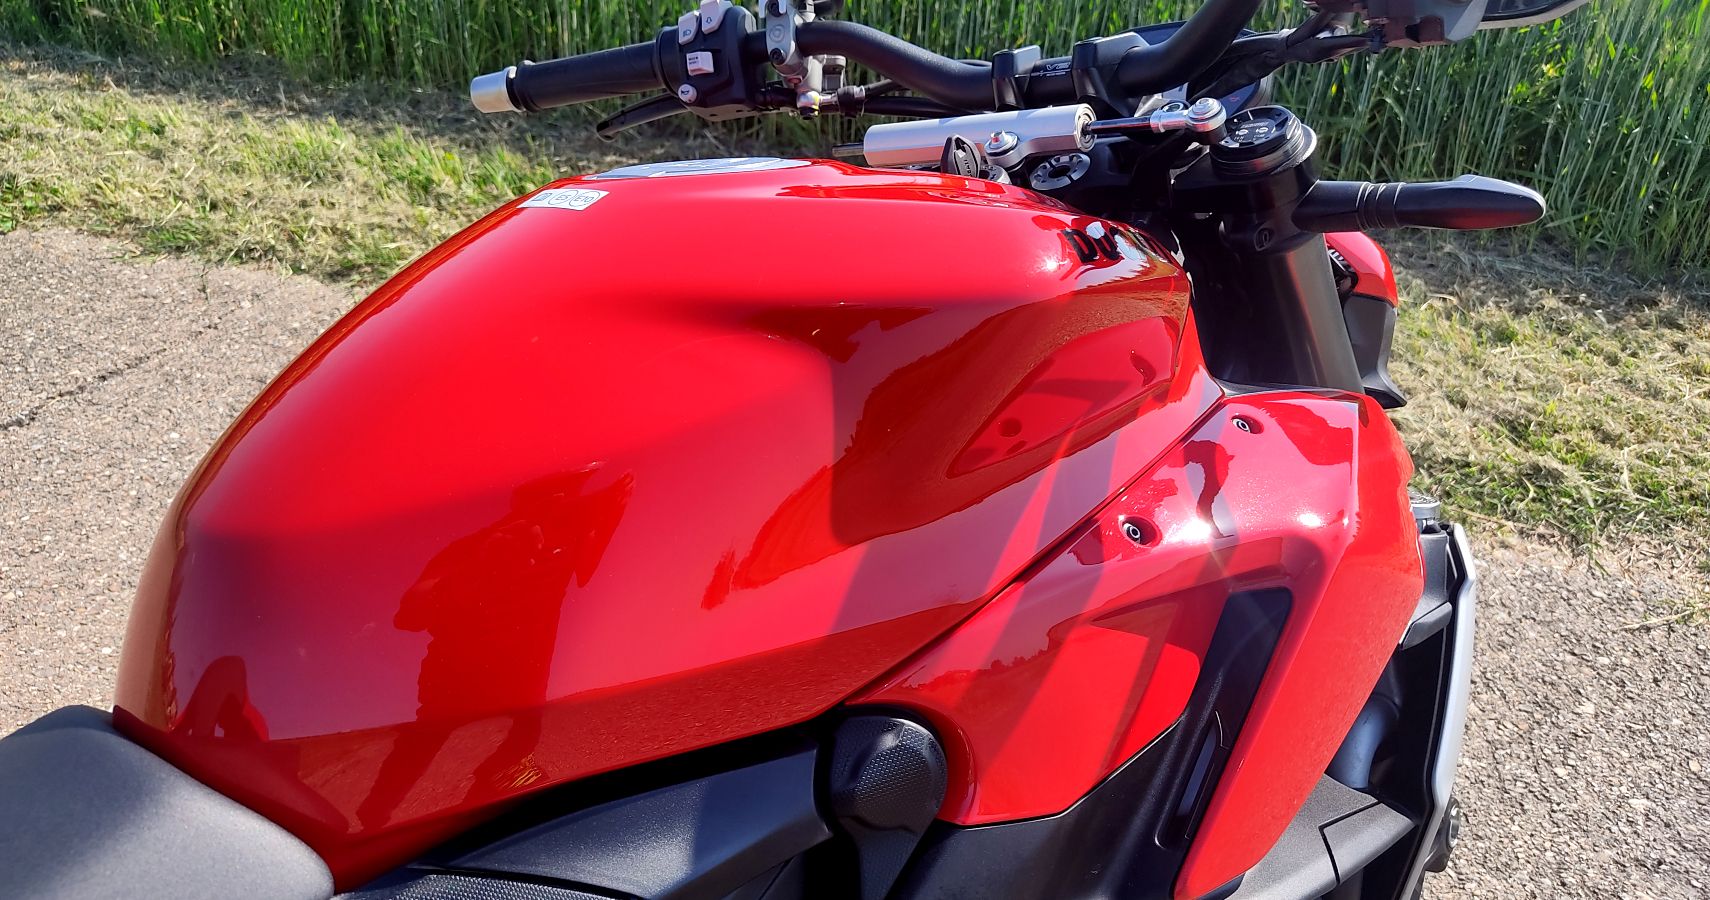 Ducati Streetfighter V2 Fuel